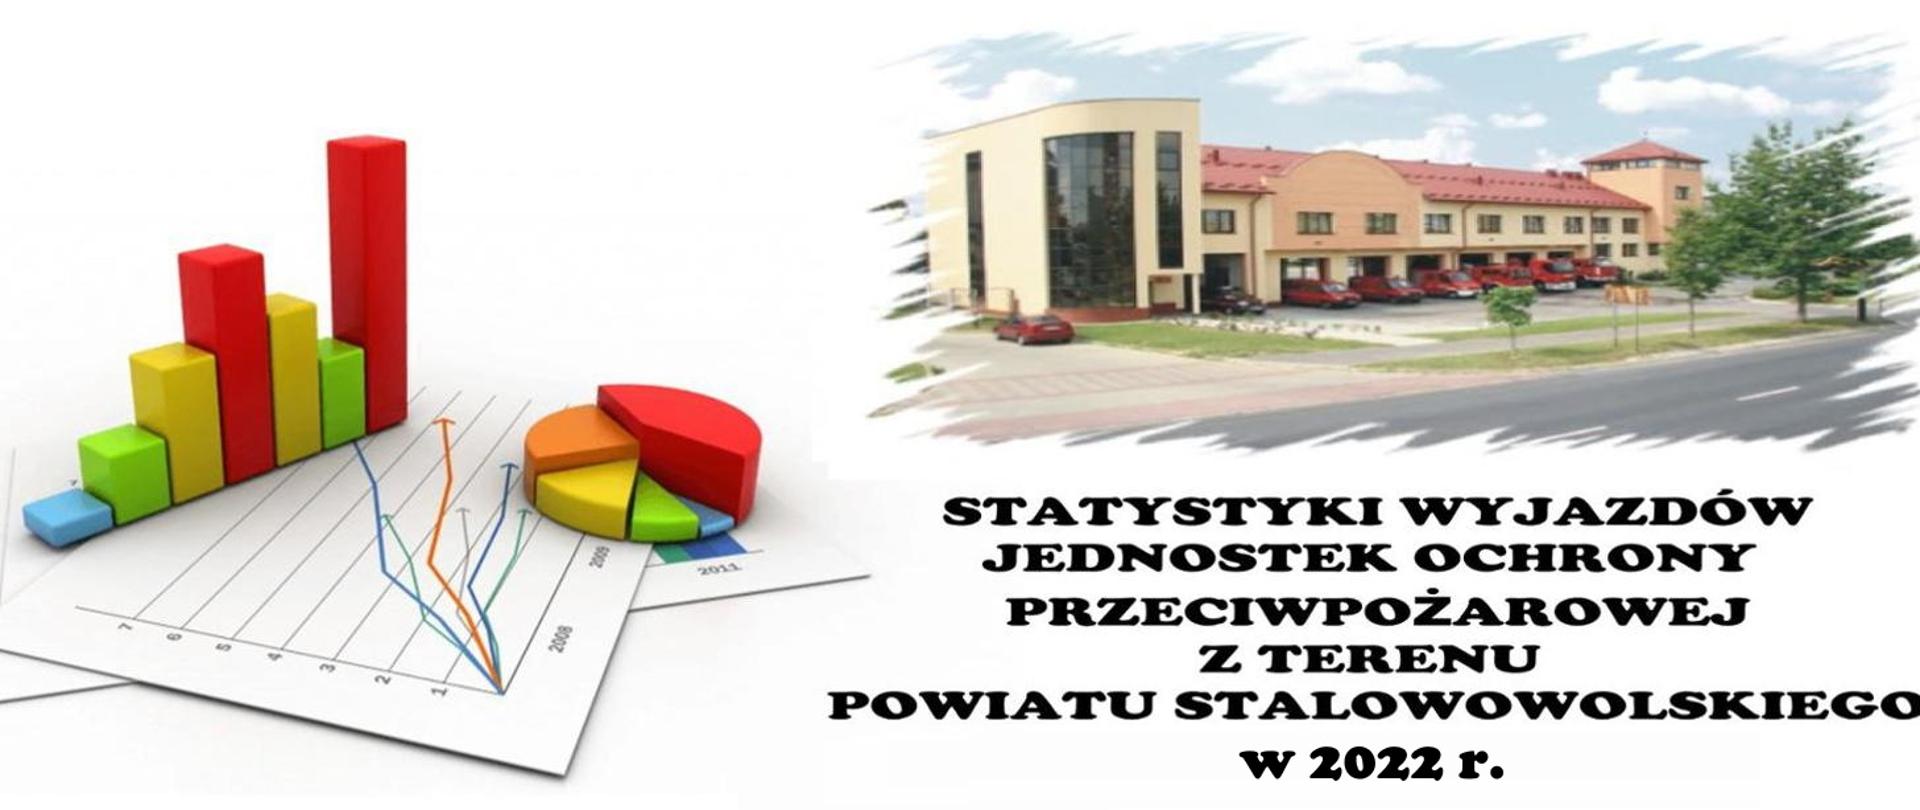 Analiza zdarzeń za 2022 r. KP PSP Stalowa Wola